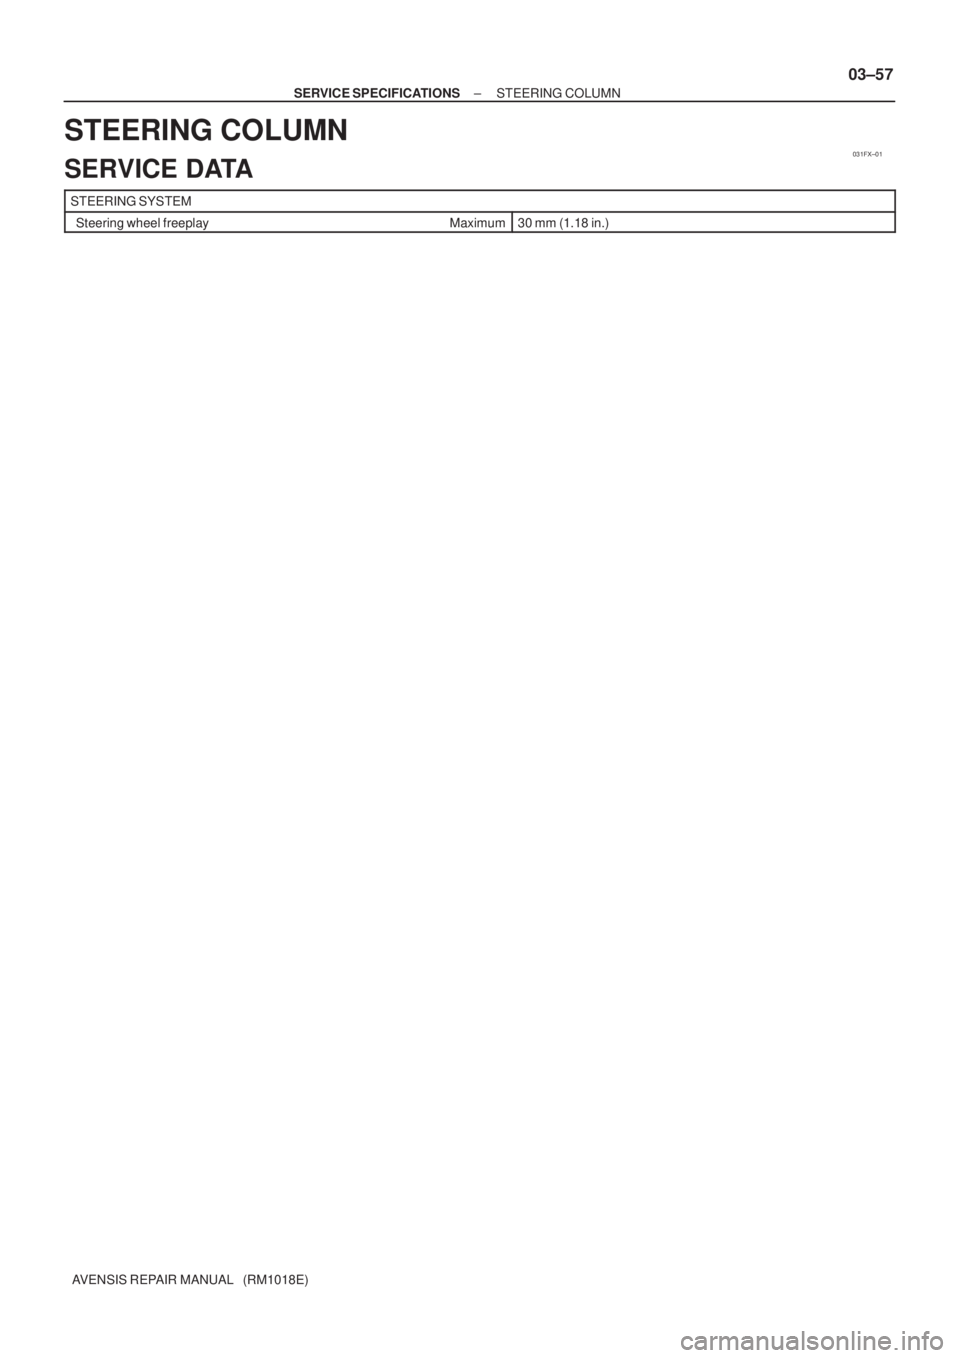 TOYOTA AVENSIS 2005  Service Repair Manual 031FX±01
± SERVICE SPECIFICATIONSSTEERING COLUMN
03±57
AVENSIS REPAIR MANUAL   (RM1018E)
STEERING COLUMN
SERVICE DATA
STEERING SYSTEM
  Steering wheel freeplay Maximum30 mm (1.18 in.) 